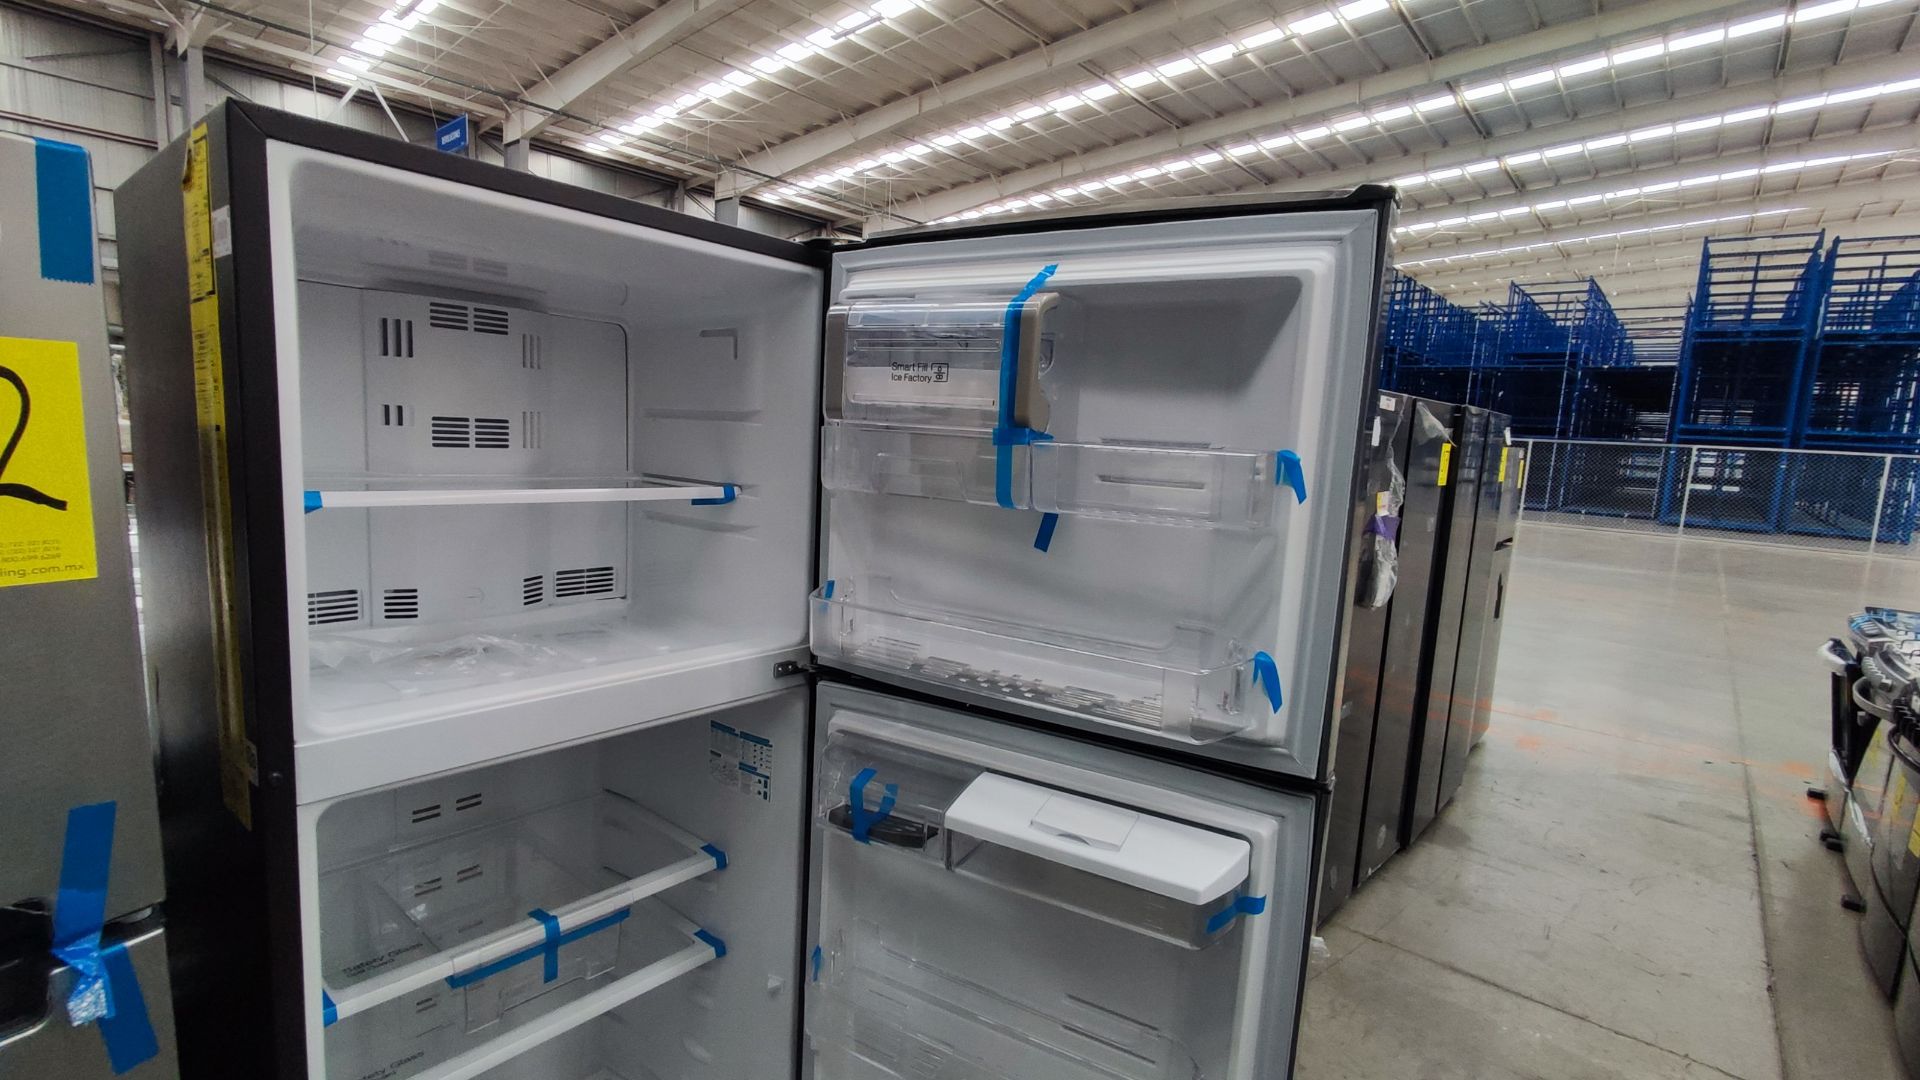 1 Refrigerador Marca Mabe, Modelo RMT400RY, Serie 2111B418085, Color Gris Detalles Estéticos. Favor - Image 4 of 12